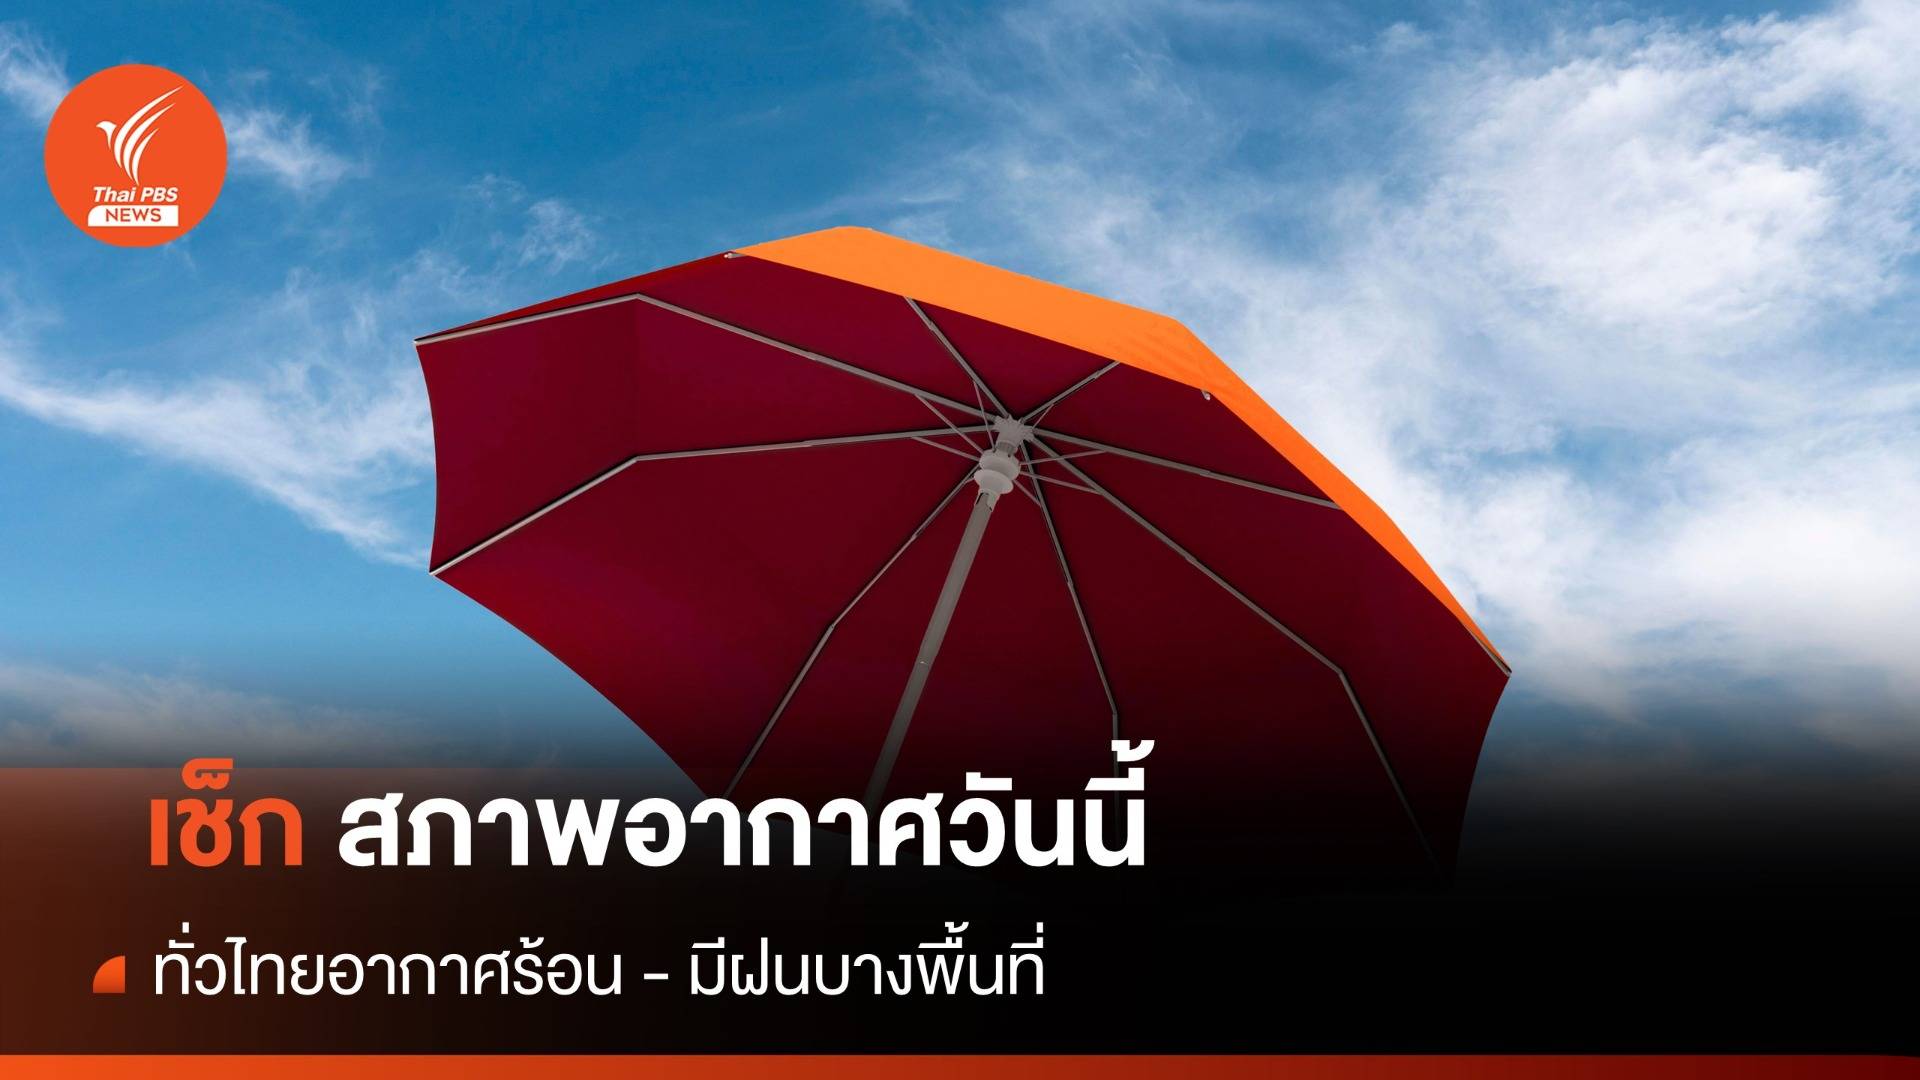 สภาพอากาศวันนี้ ทั่วไทยอากาศร้อน - มีฝนบางพื้นที่ กทม.เจอฝน 10%